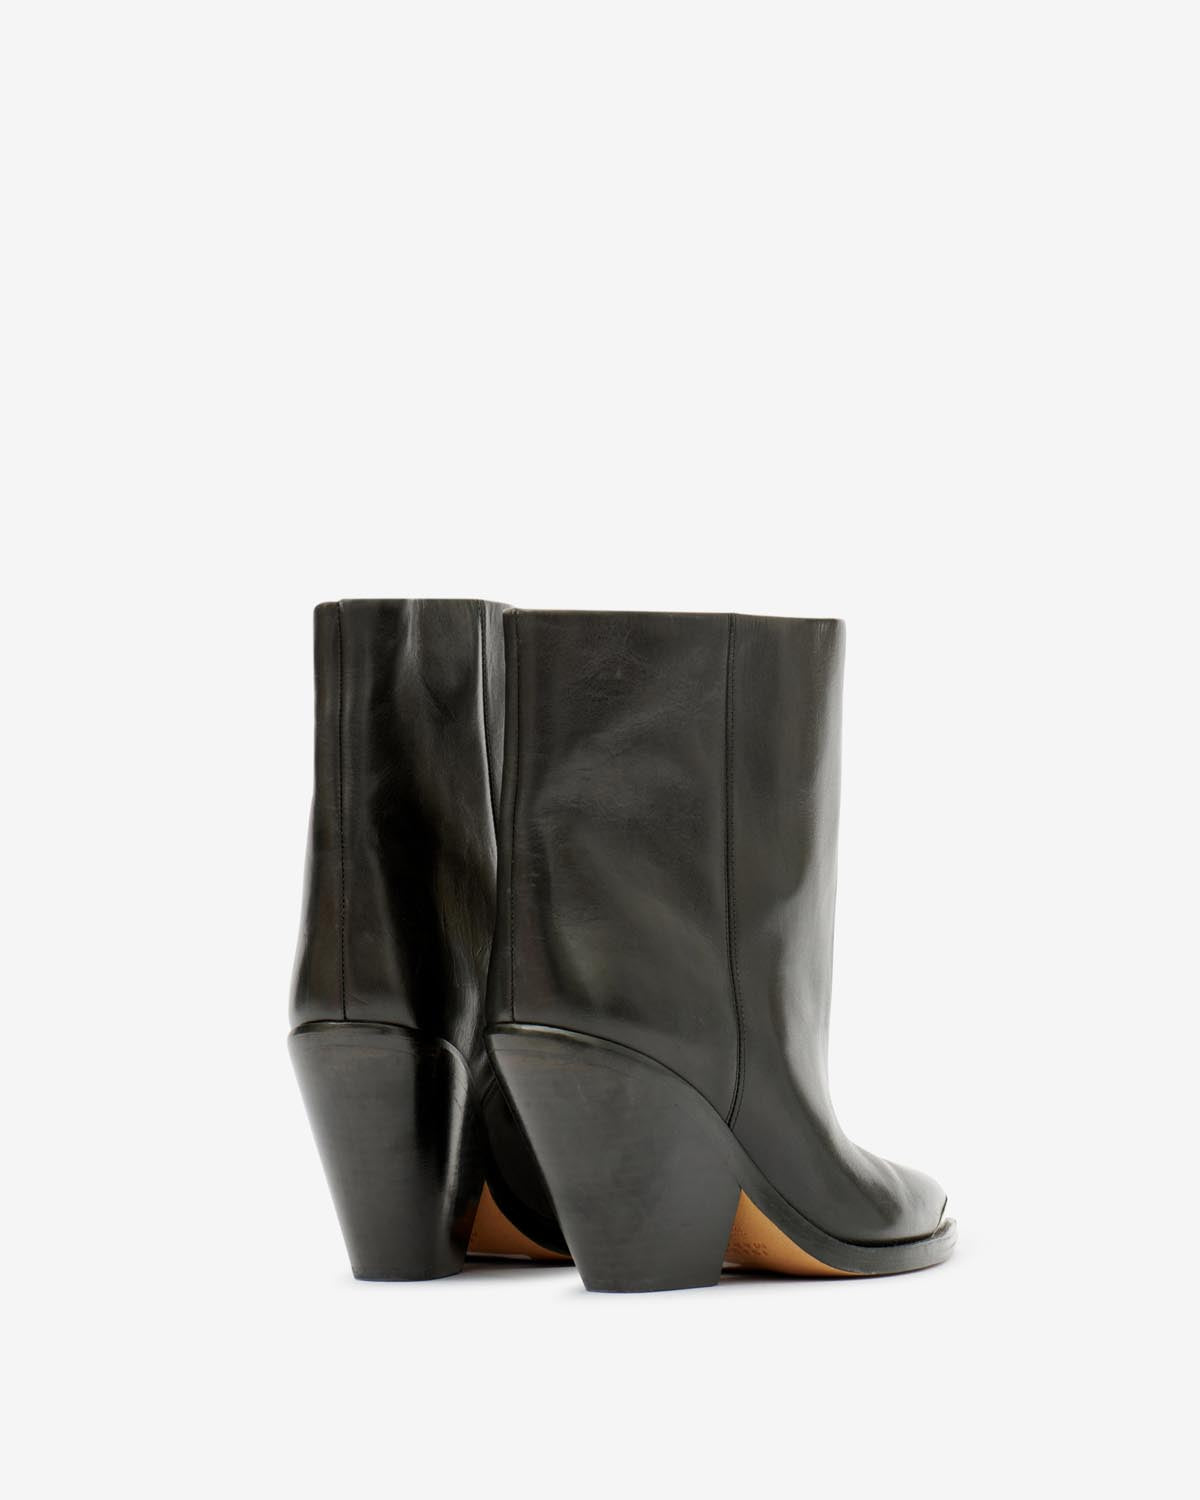 Boots ladel Woman Noir 2